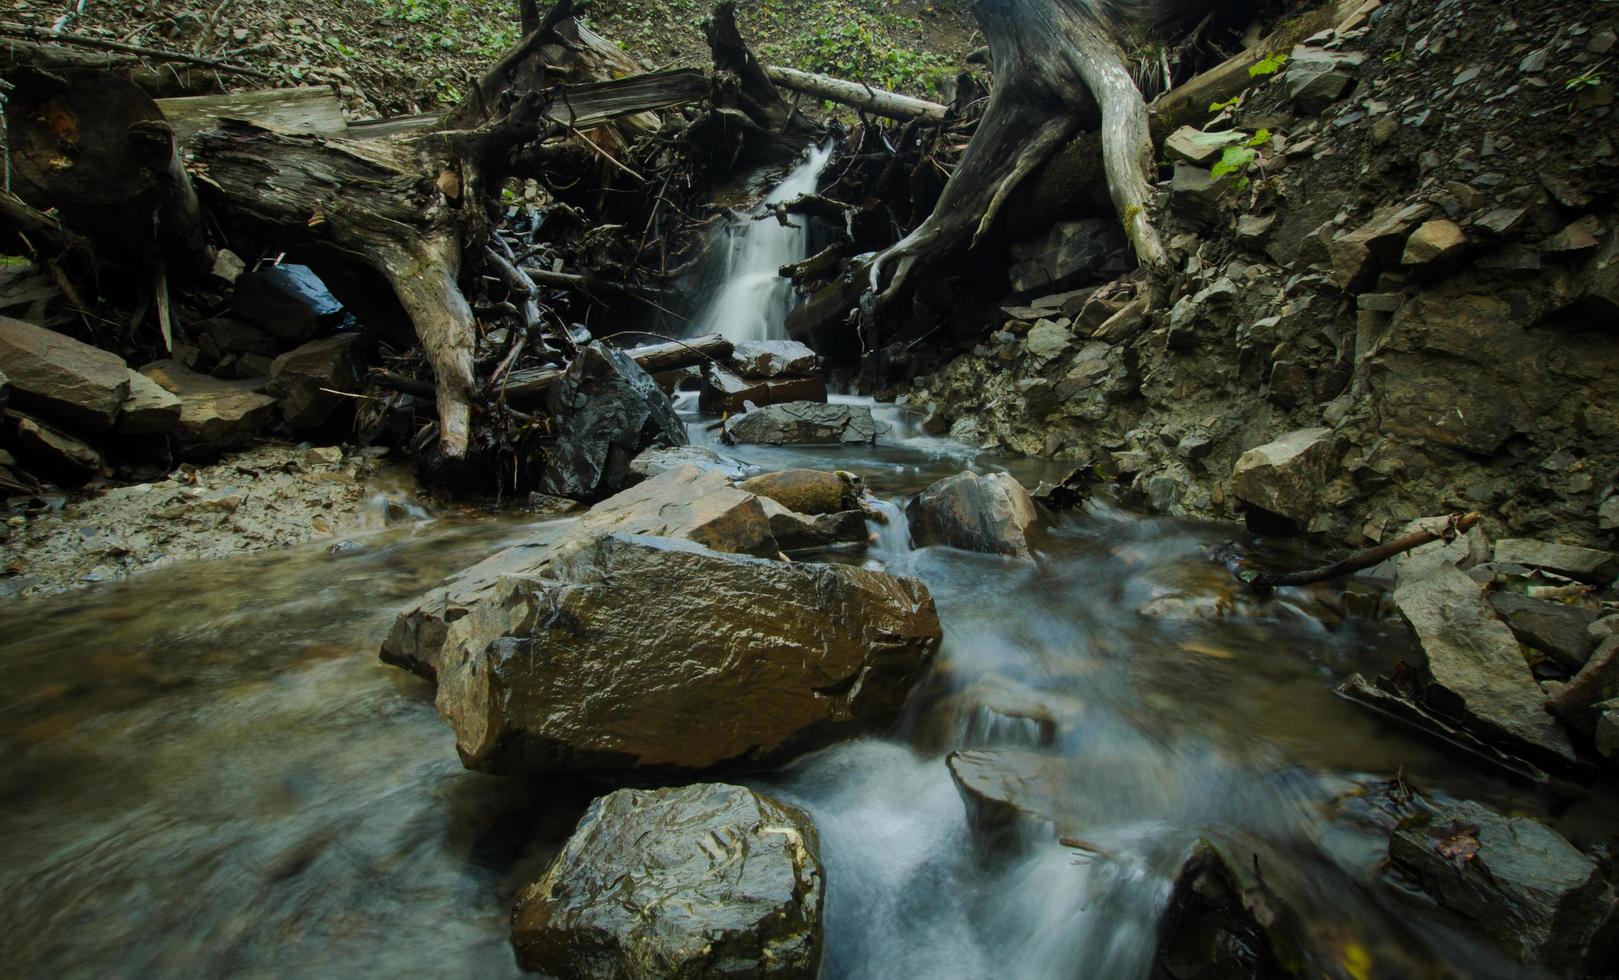 río de montaña con fondo de piedras, bosques y rocas foto